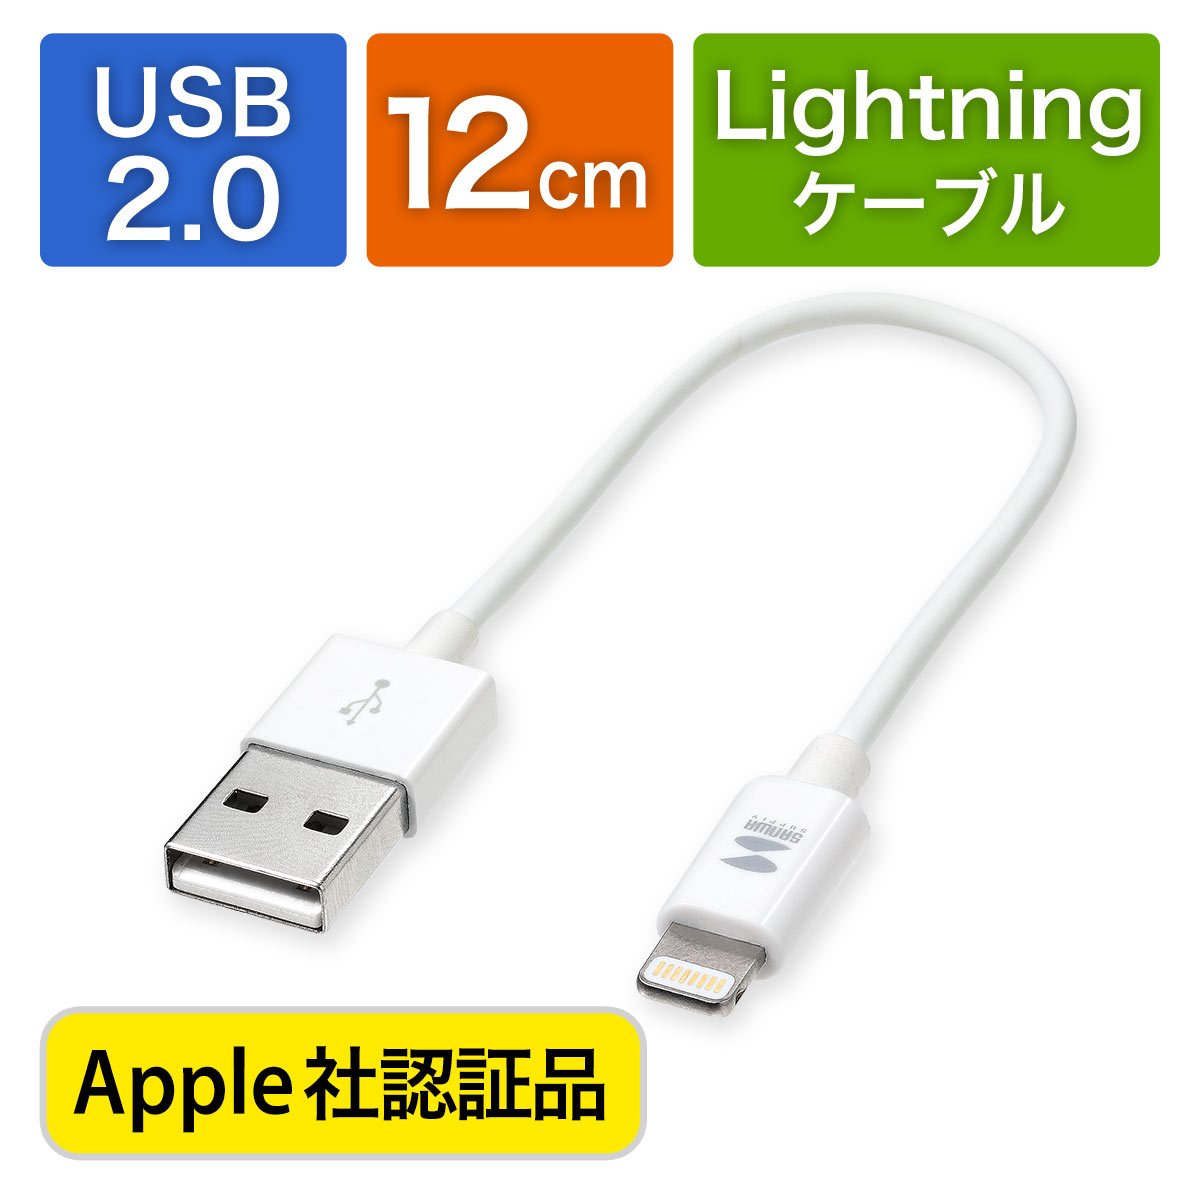 ライトニングケーブル（ショートタイプ・Apple MFi認証品・充電・同期・Lightning・12cm・ホワイト）  500-IPLM010WKの販売商品 | 通販ならサンワダイレクト